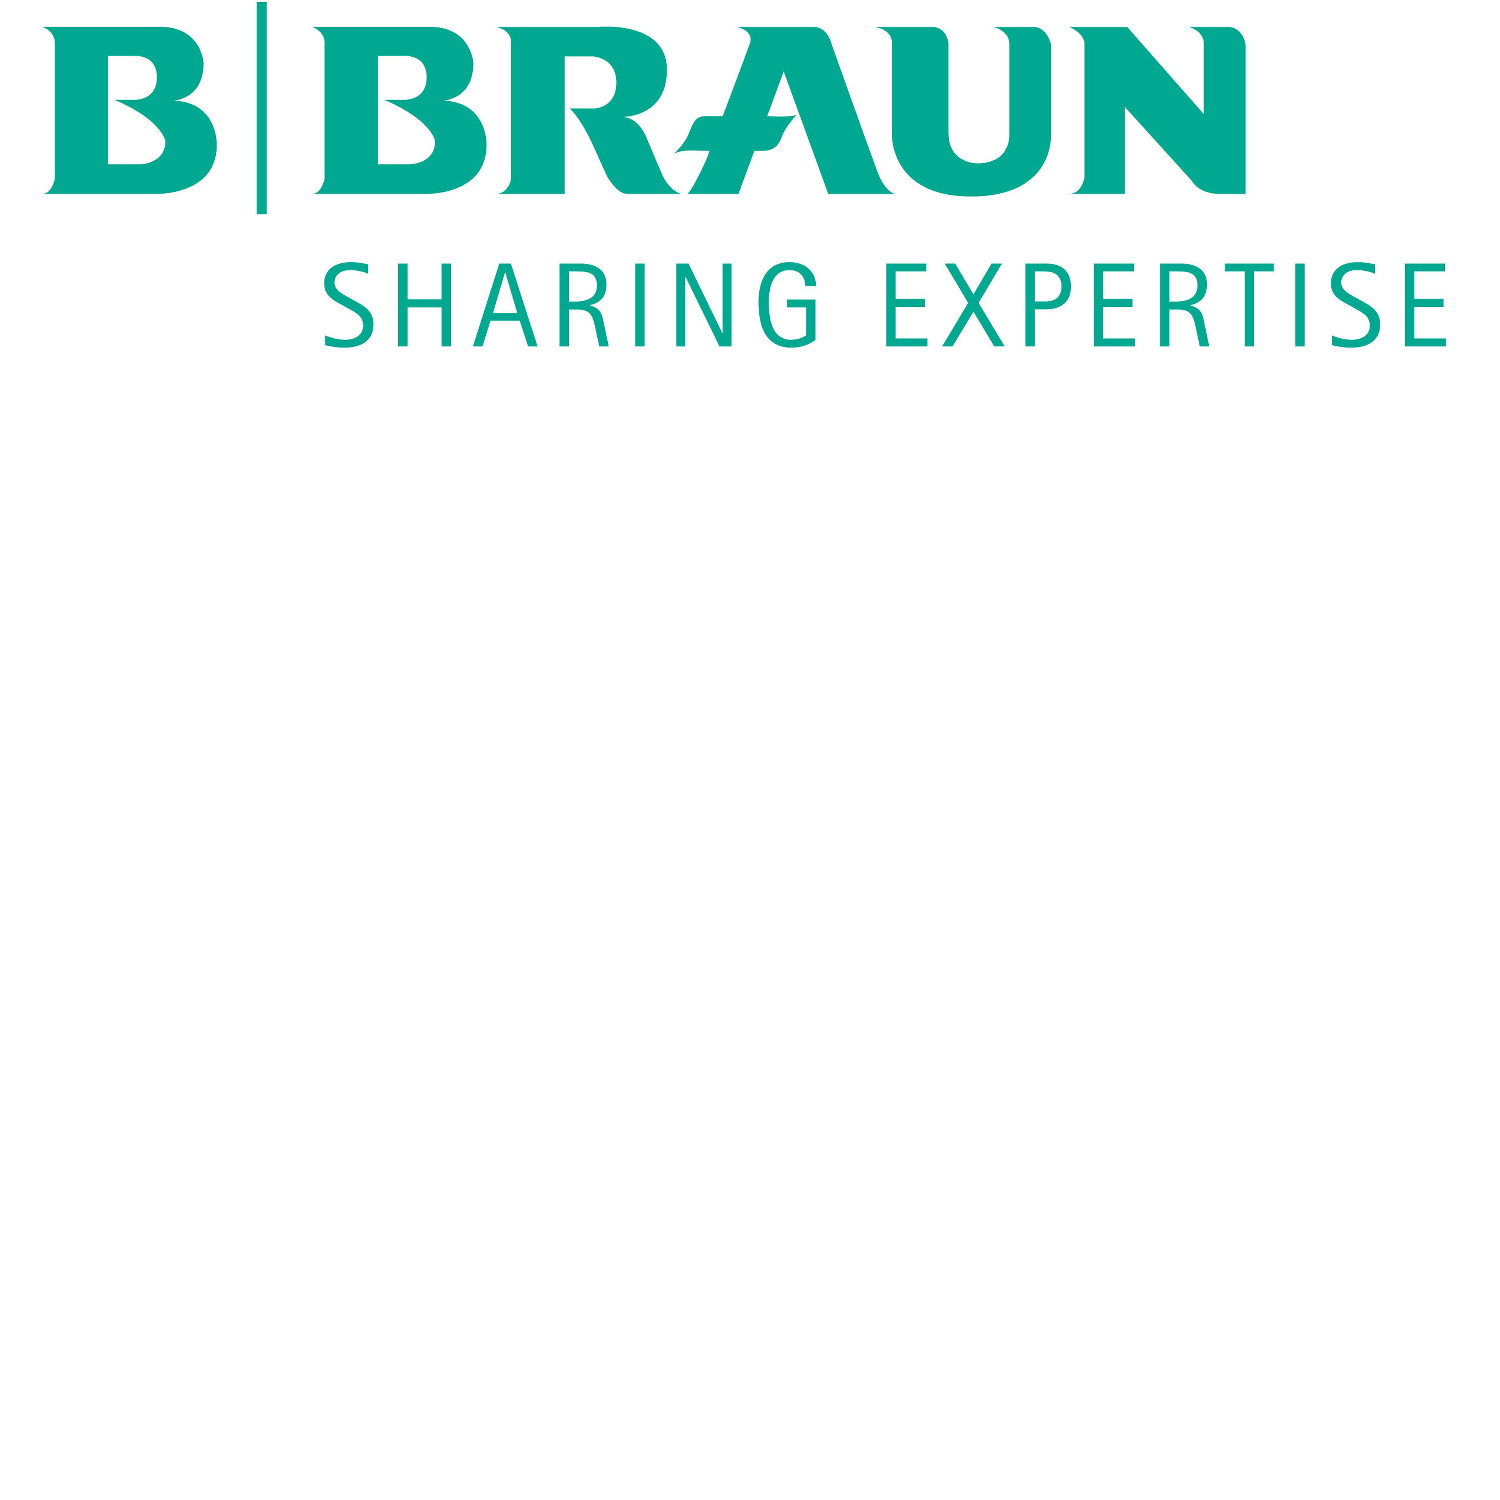 b.braun-120x120